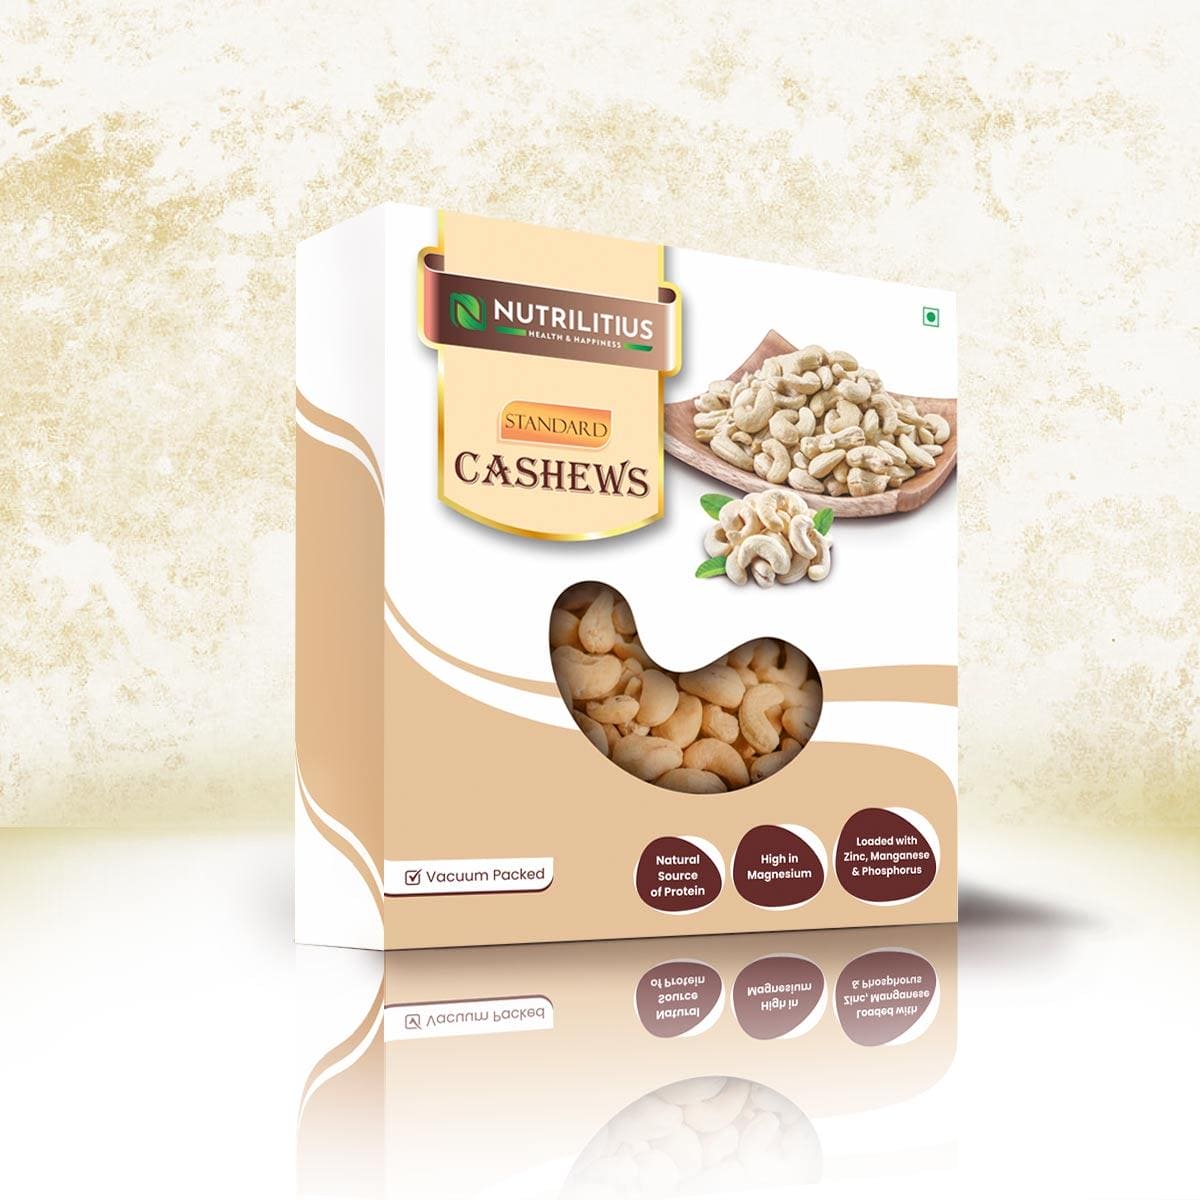 Nutrilitius Standard Cashews - Nutrilitius